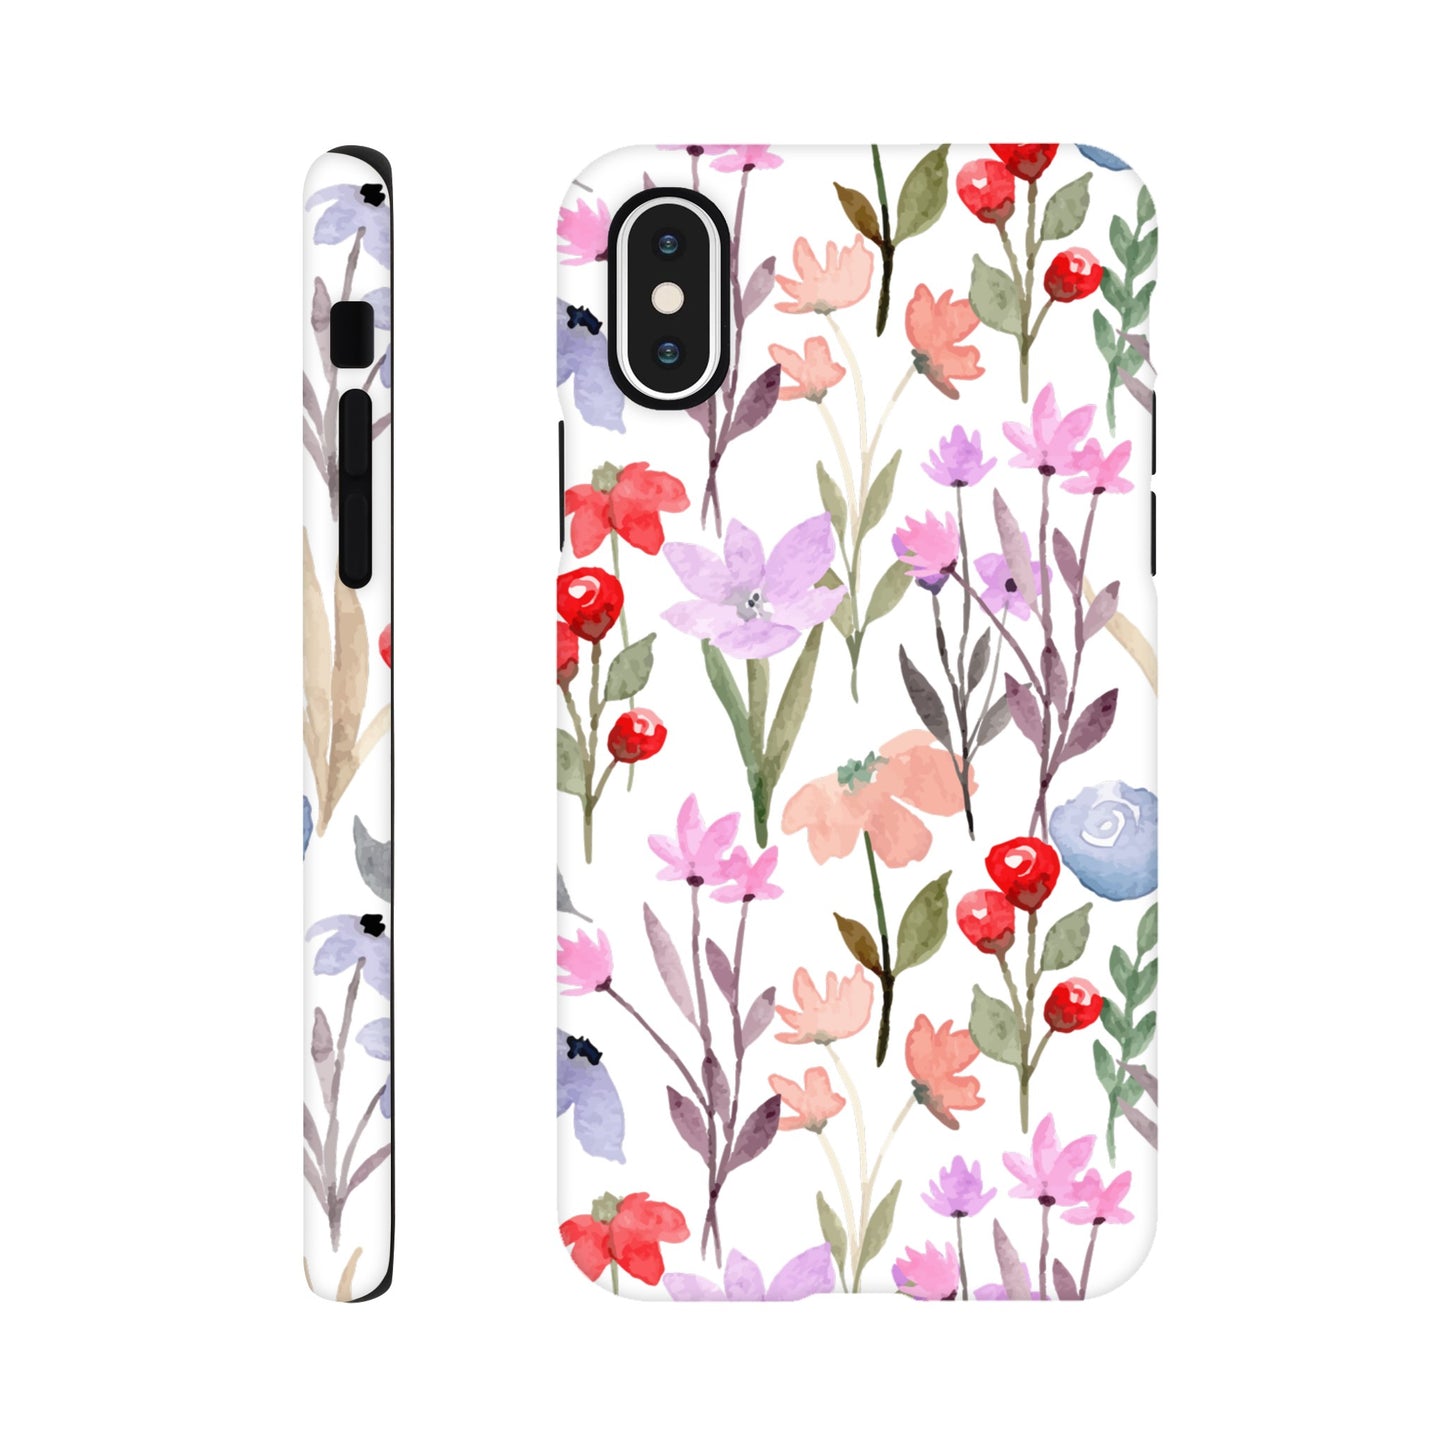 Watercolour Flowers - Phone Tough Case iPhone XS Phone Case Plants